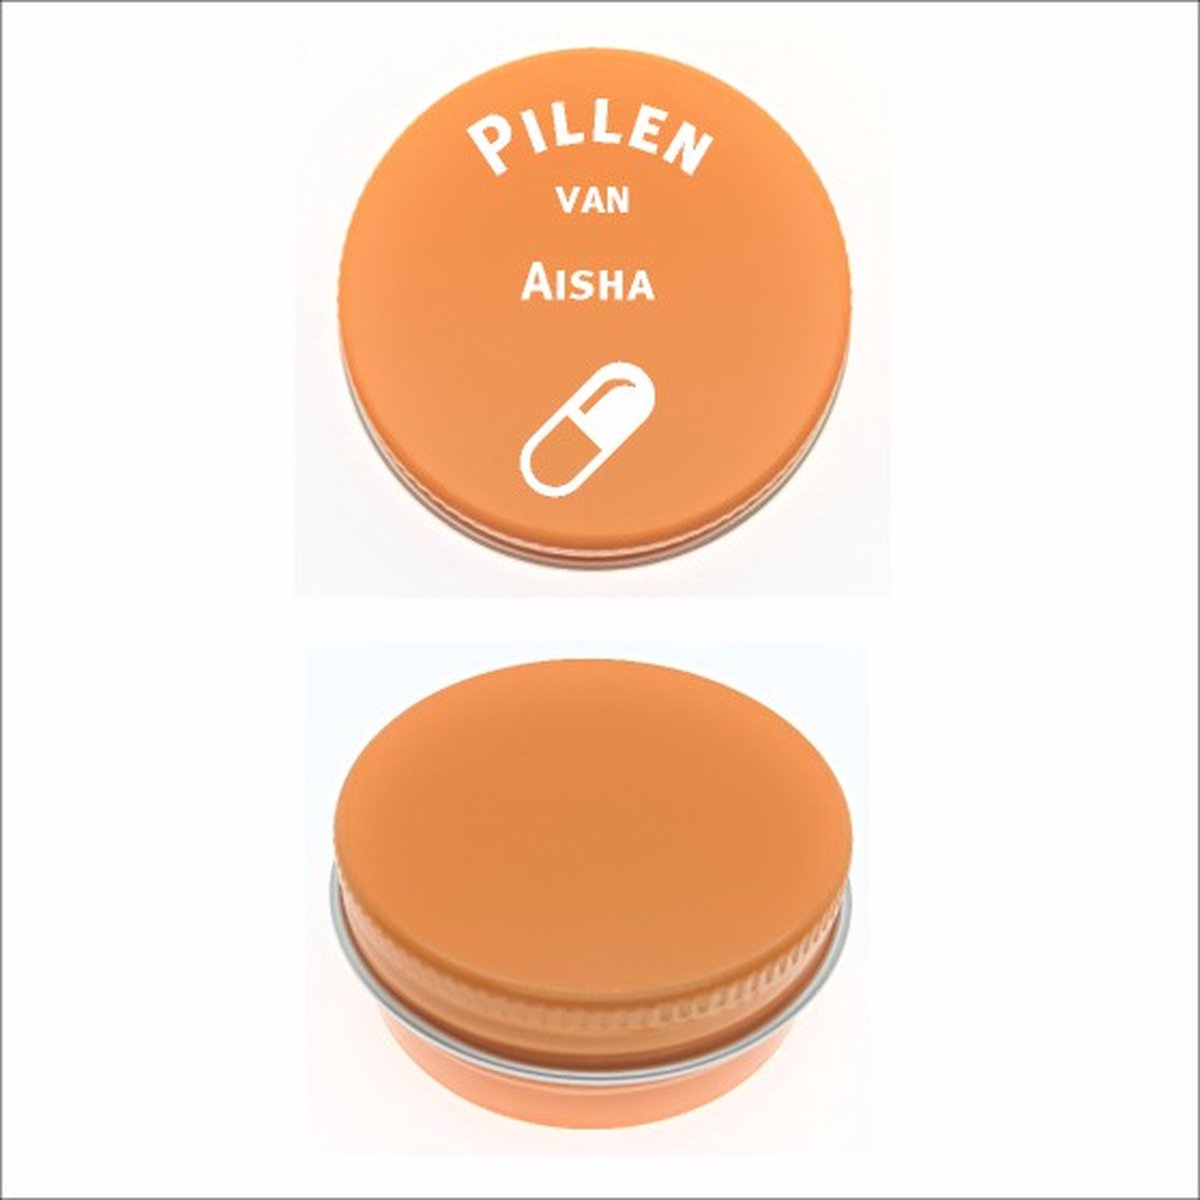 Pillen Blikje Met Naam Gravering - Aisha